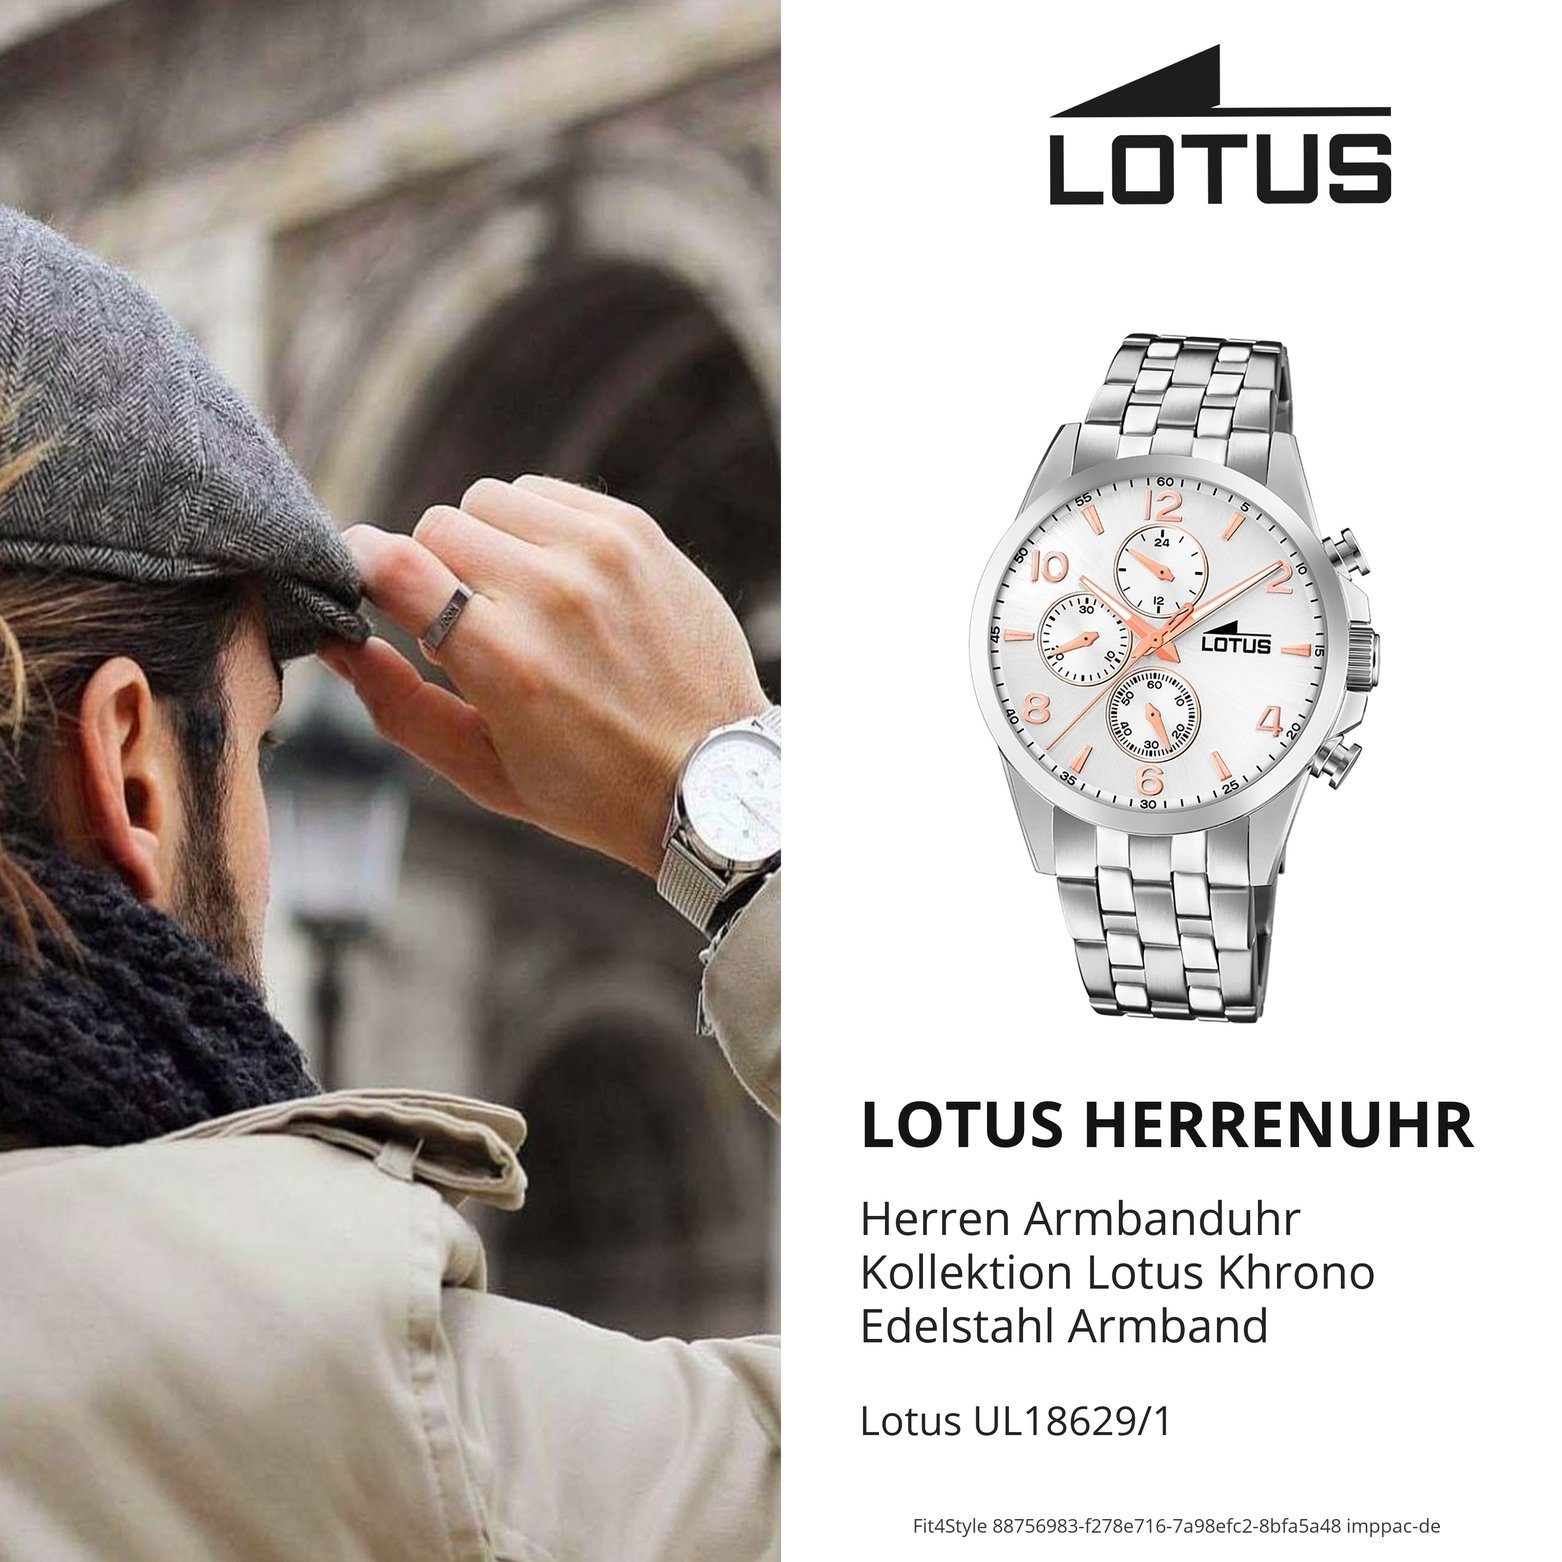 Lotus Chronograph LOTUS Herren Edelstahlarmband 18629/1 Herren (ca. rund, Sport Armbanduhr Edelstahl, Uhr 41mm), groß silber